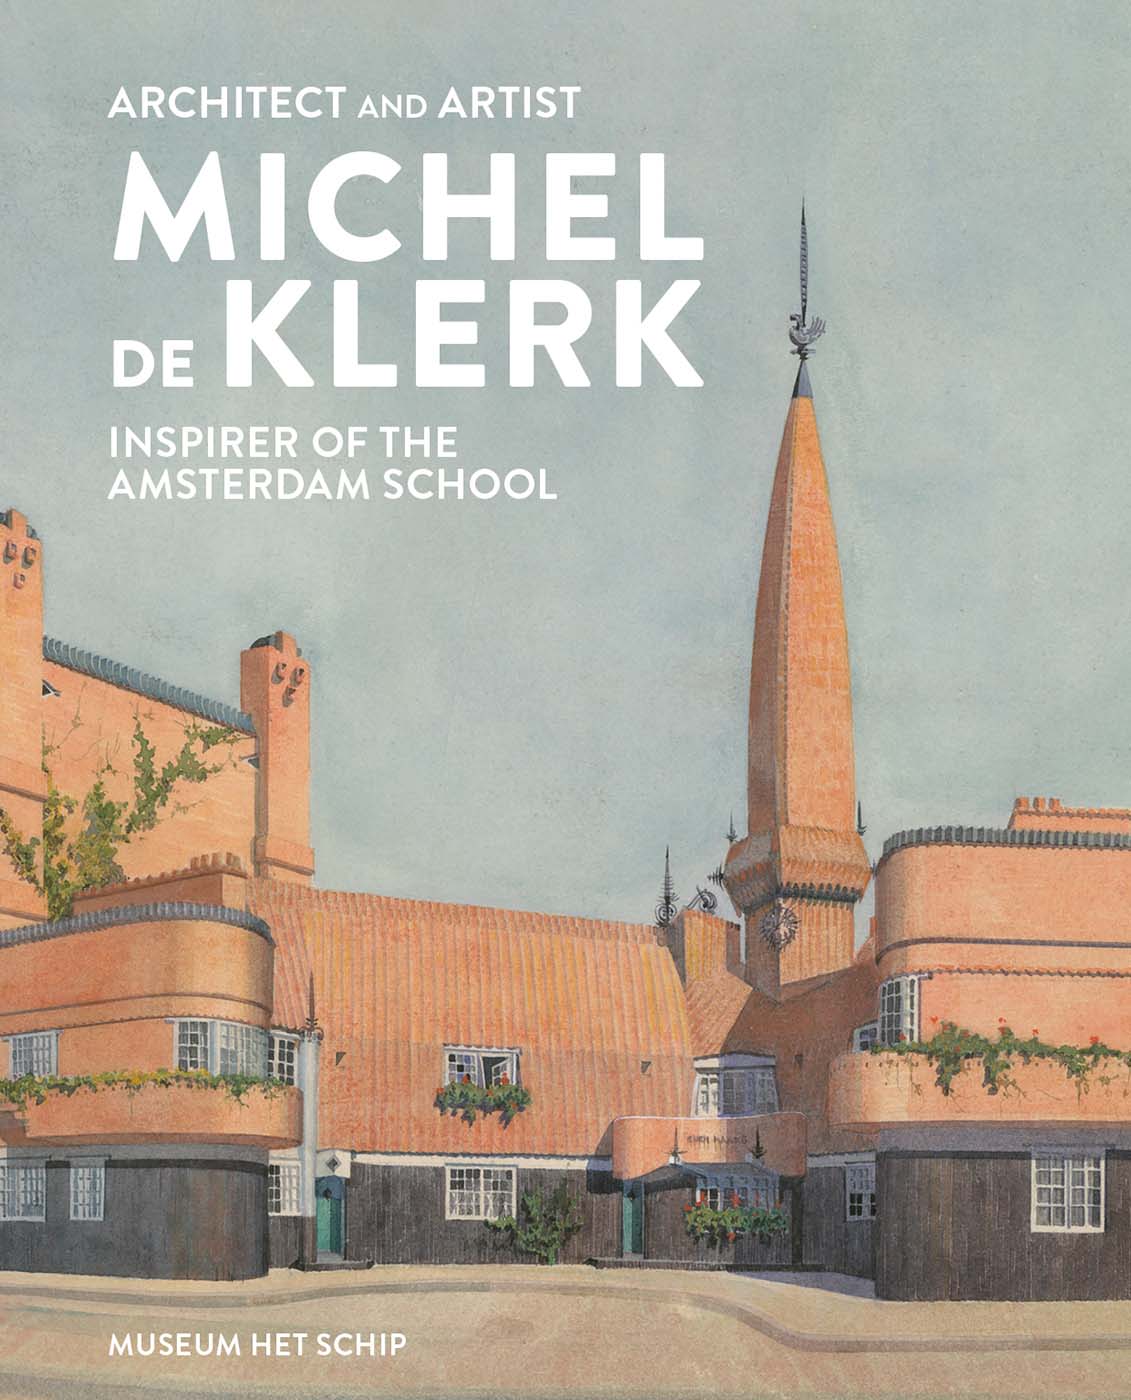 Architect and artist Michel de Klerk, inspirer of the Amsterdam School